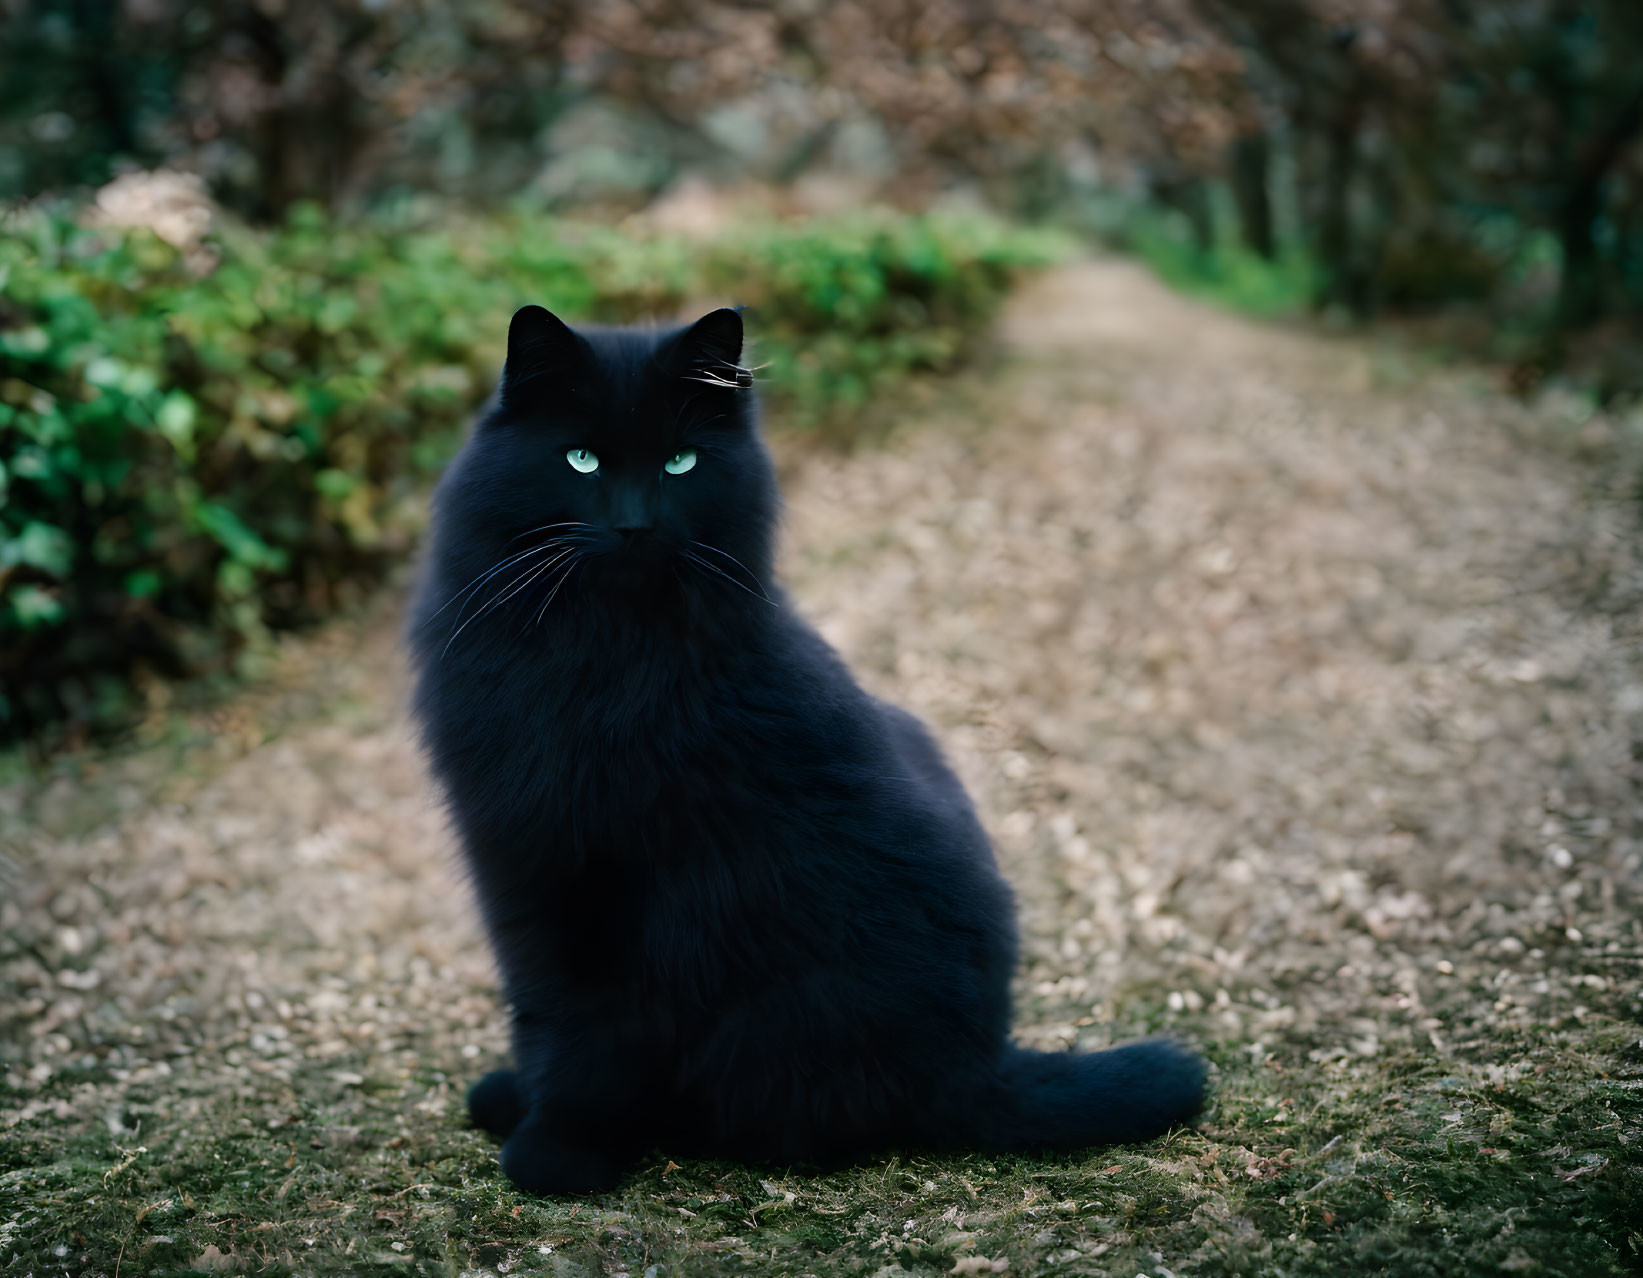 Black Cat with Green Eyes on Leaf-Strewn Path amid Lush Greenery